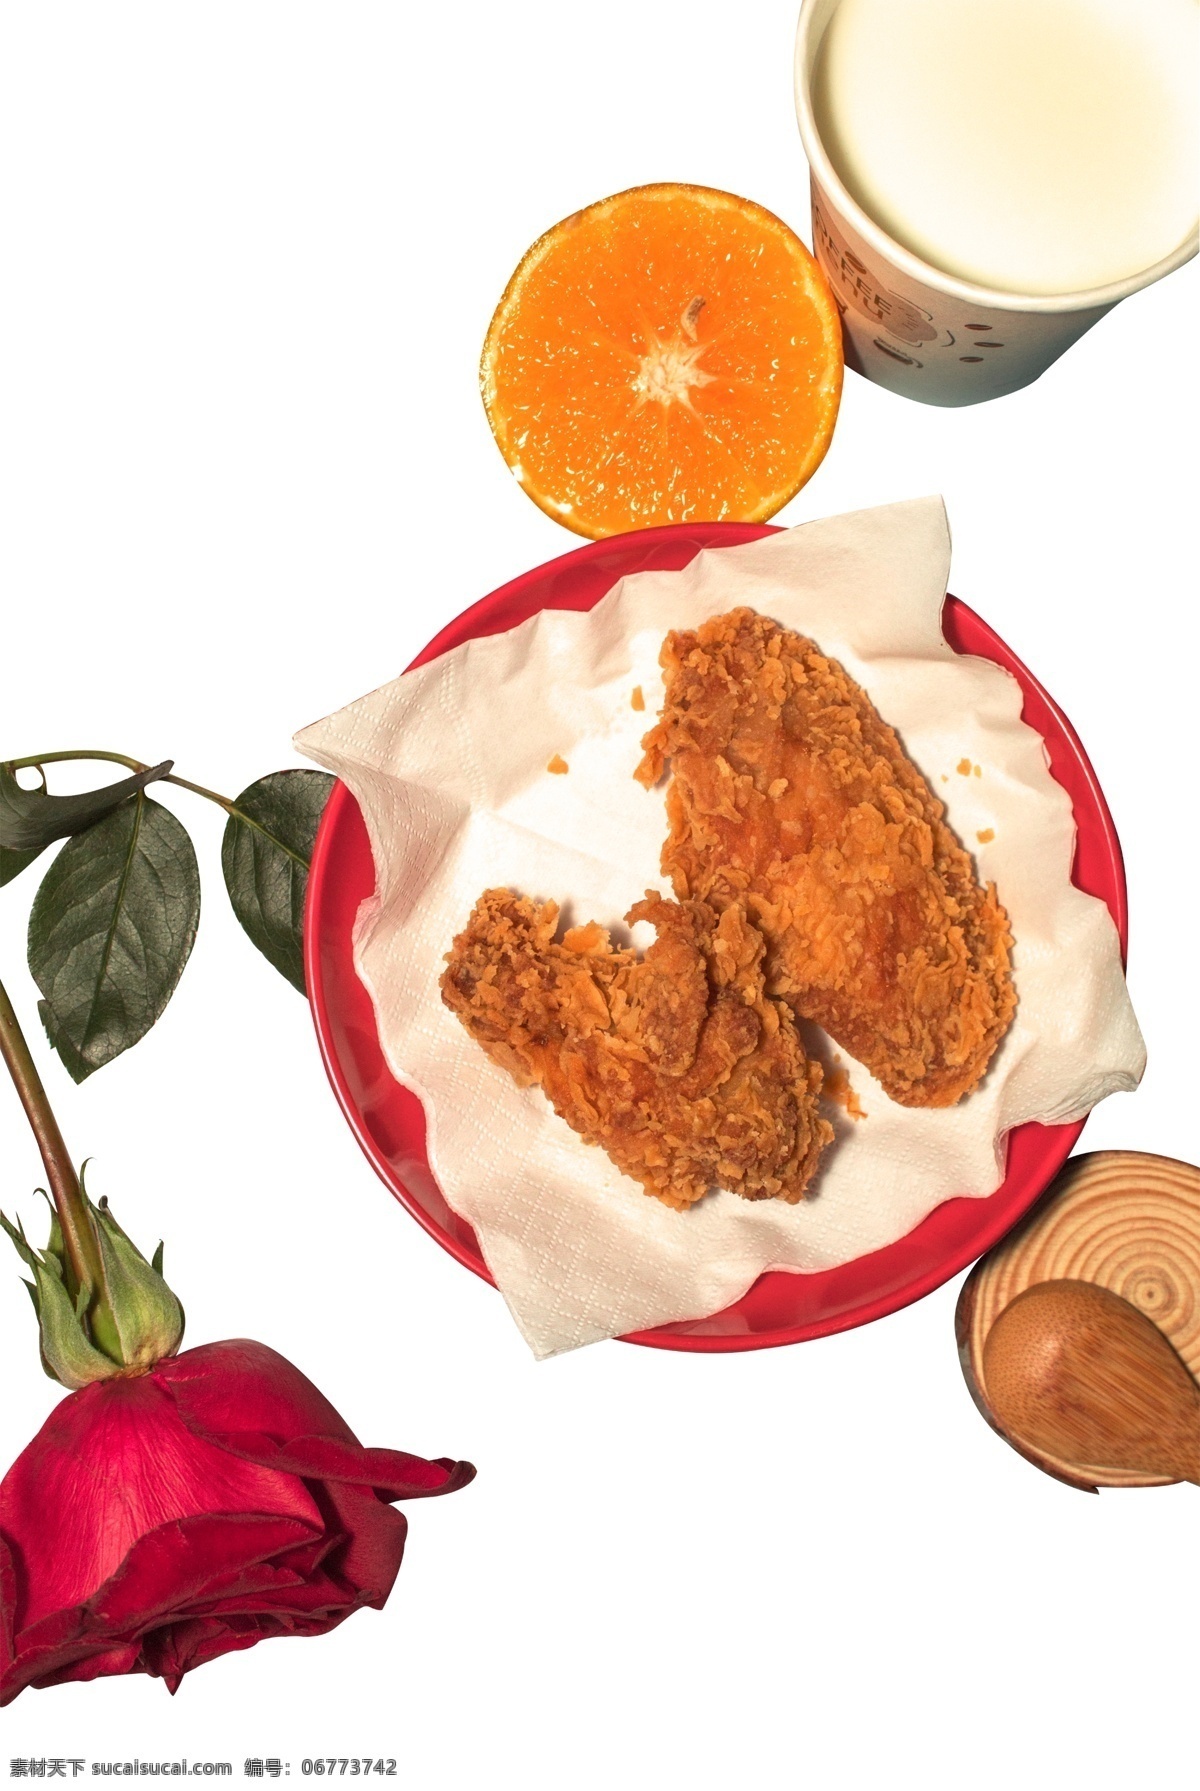 玫瑰花 炸鸡 橙子 实物 食物 玫瑰 花 叶子 盘子 纸巾 木头 木盘 木 勺子 杯子 牛奶 红色 矢量png